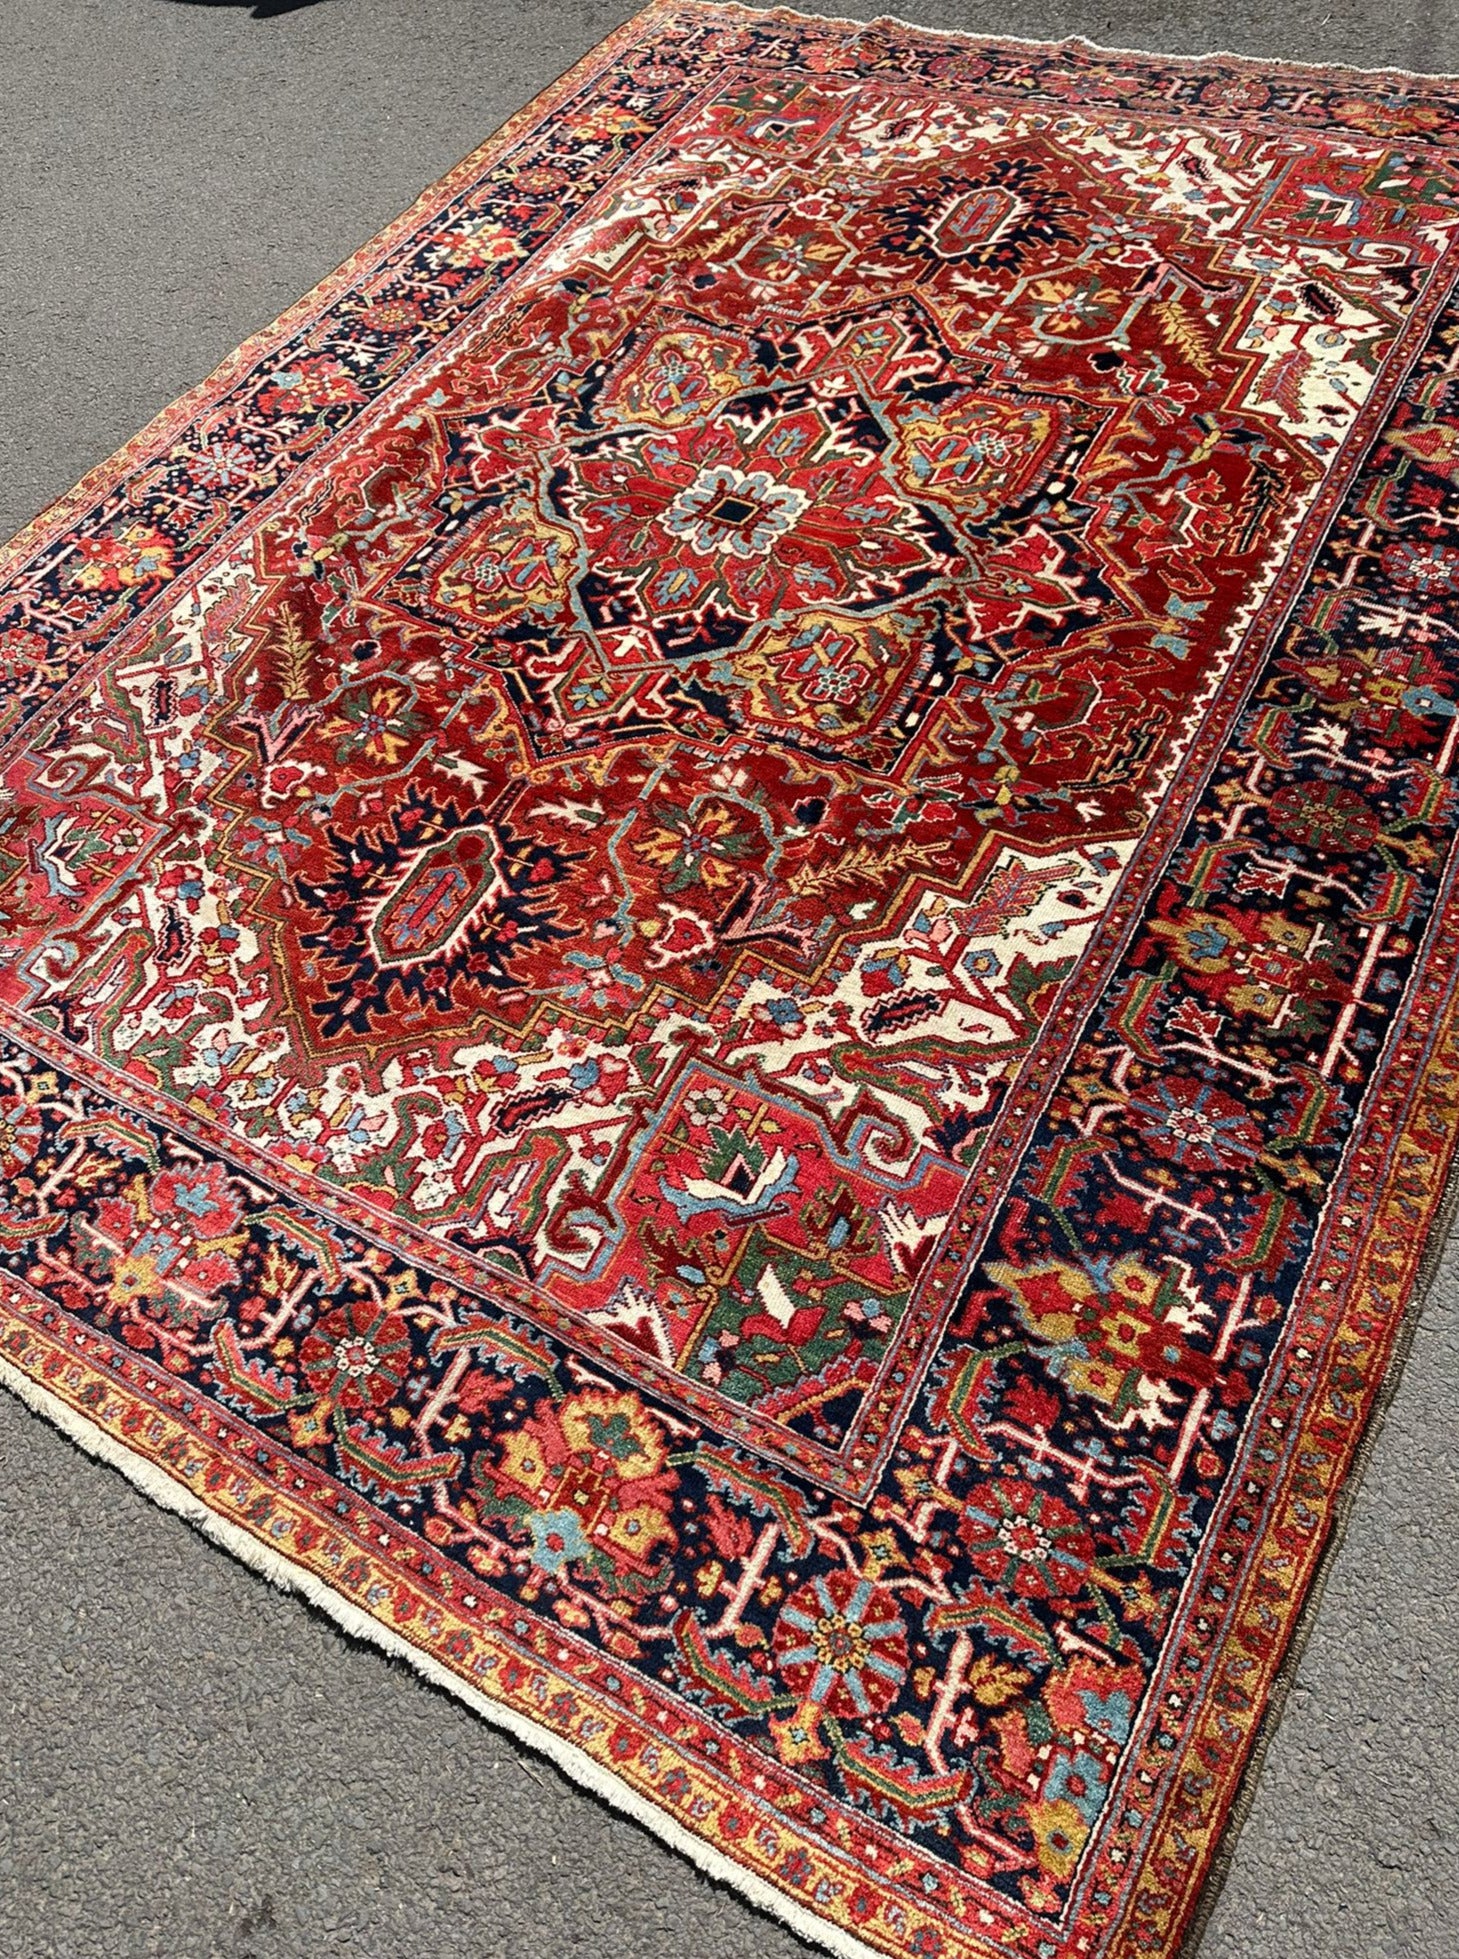 Heriz vintage carpet (340 x 250cm)